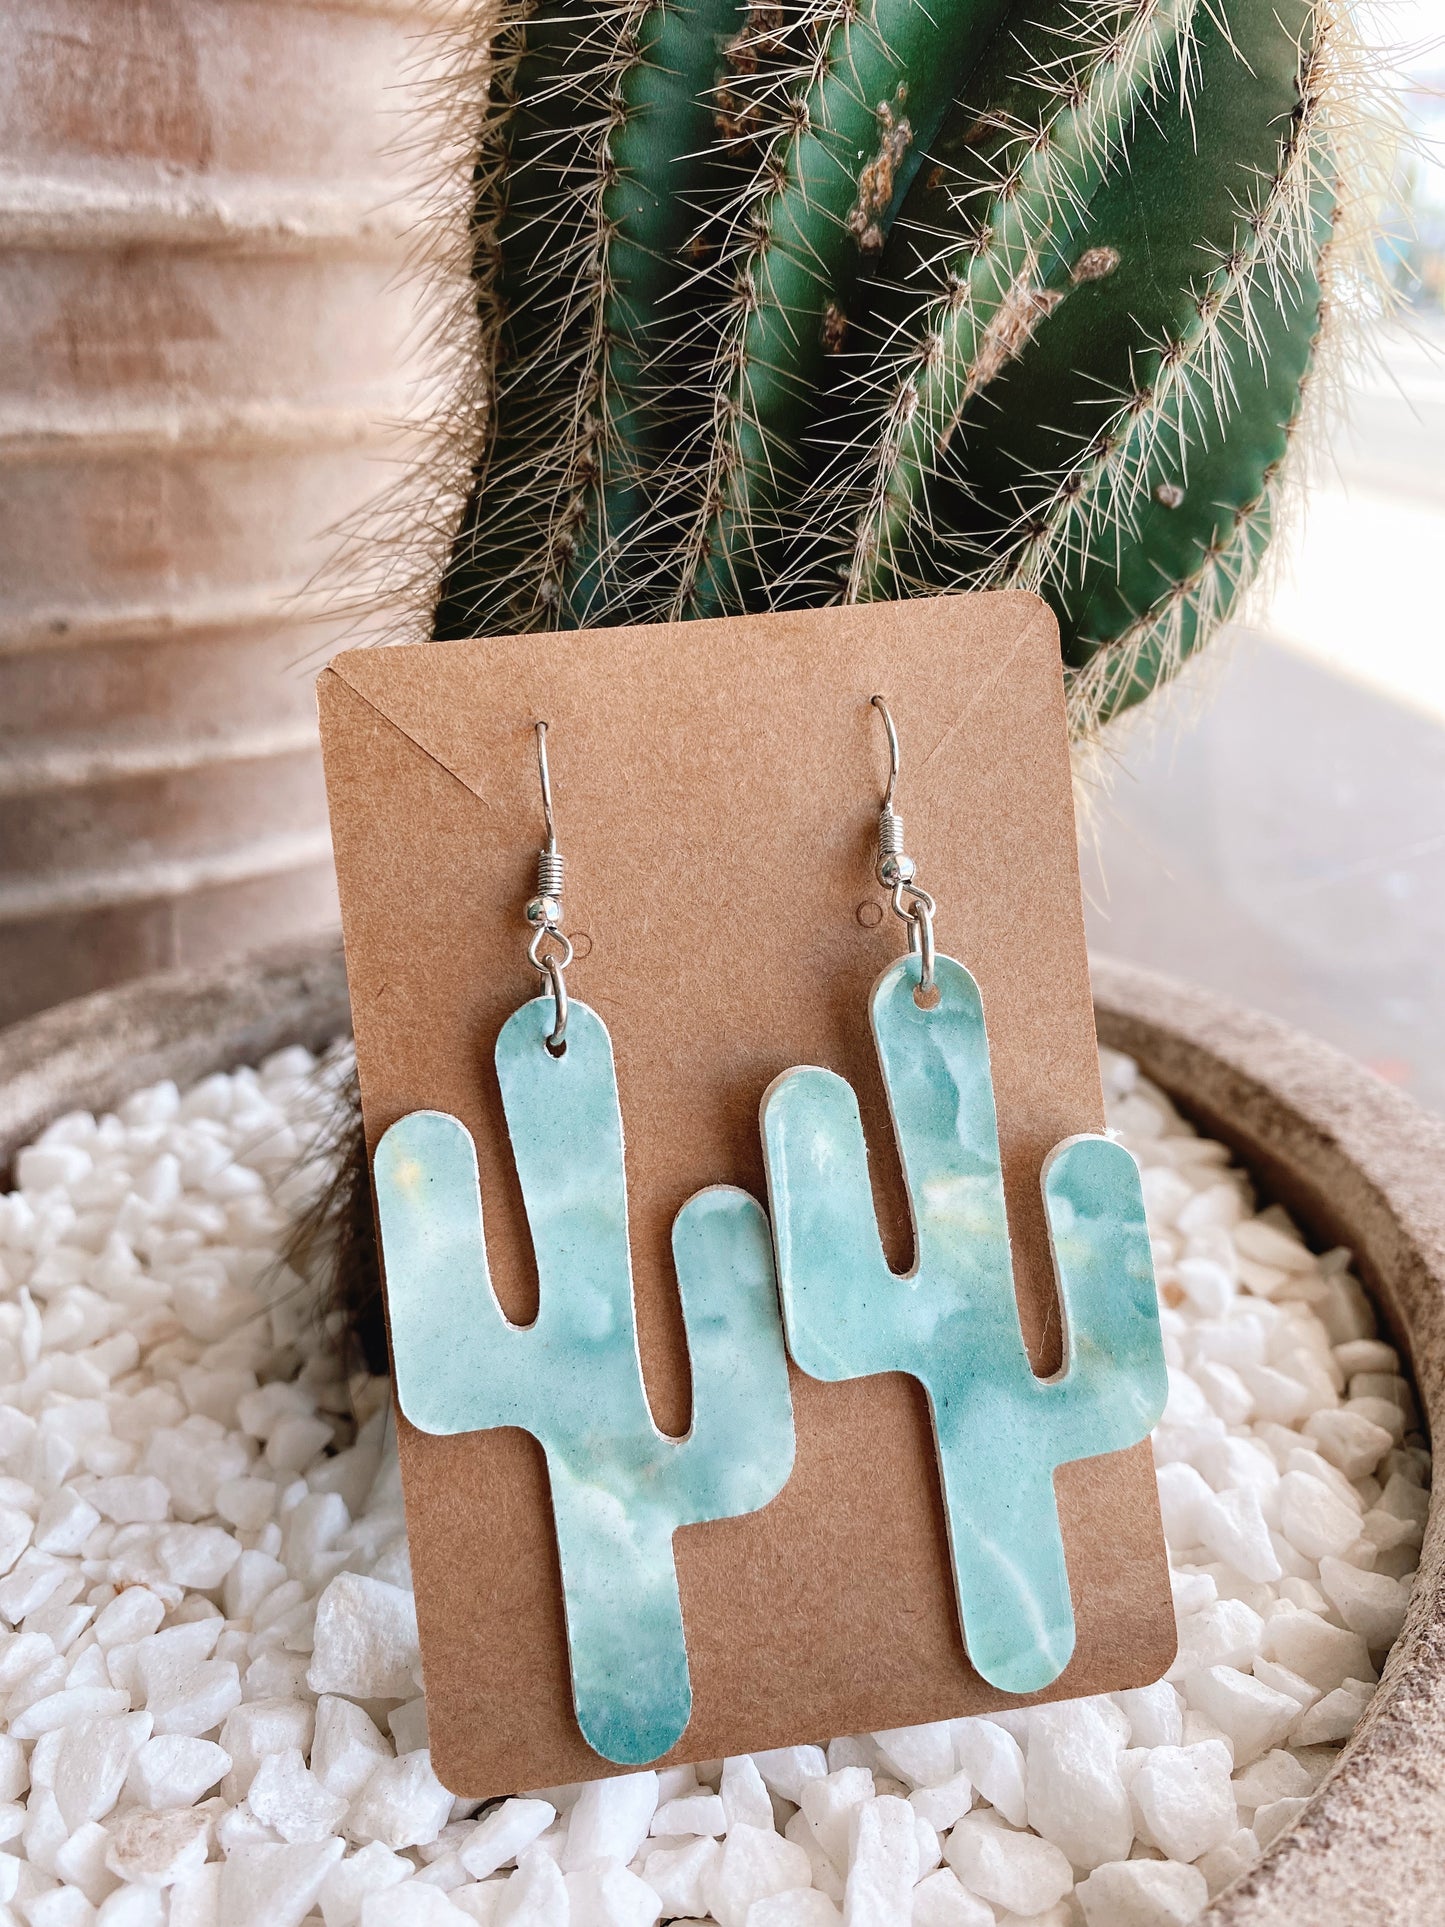 Cactus Earrings - Marble blue